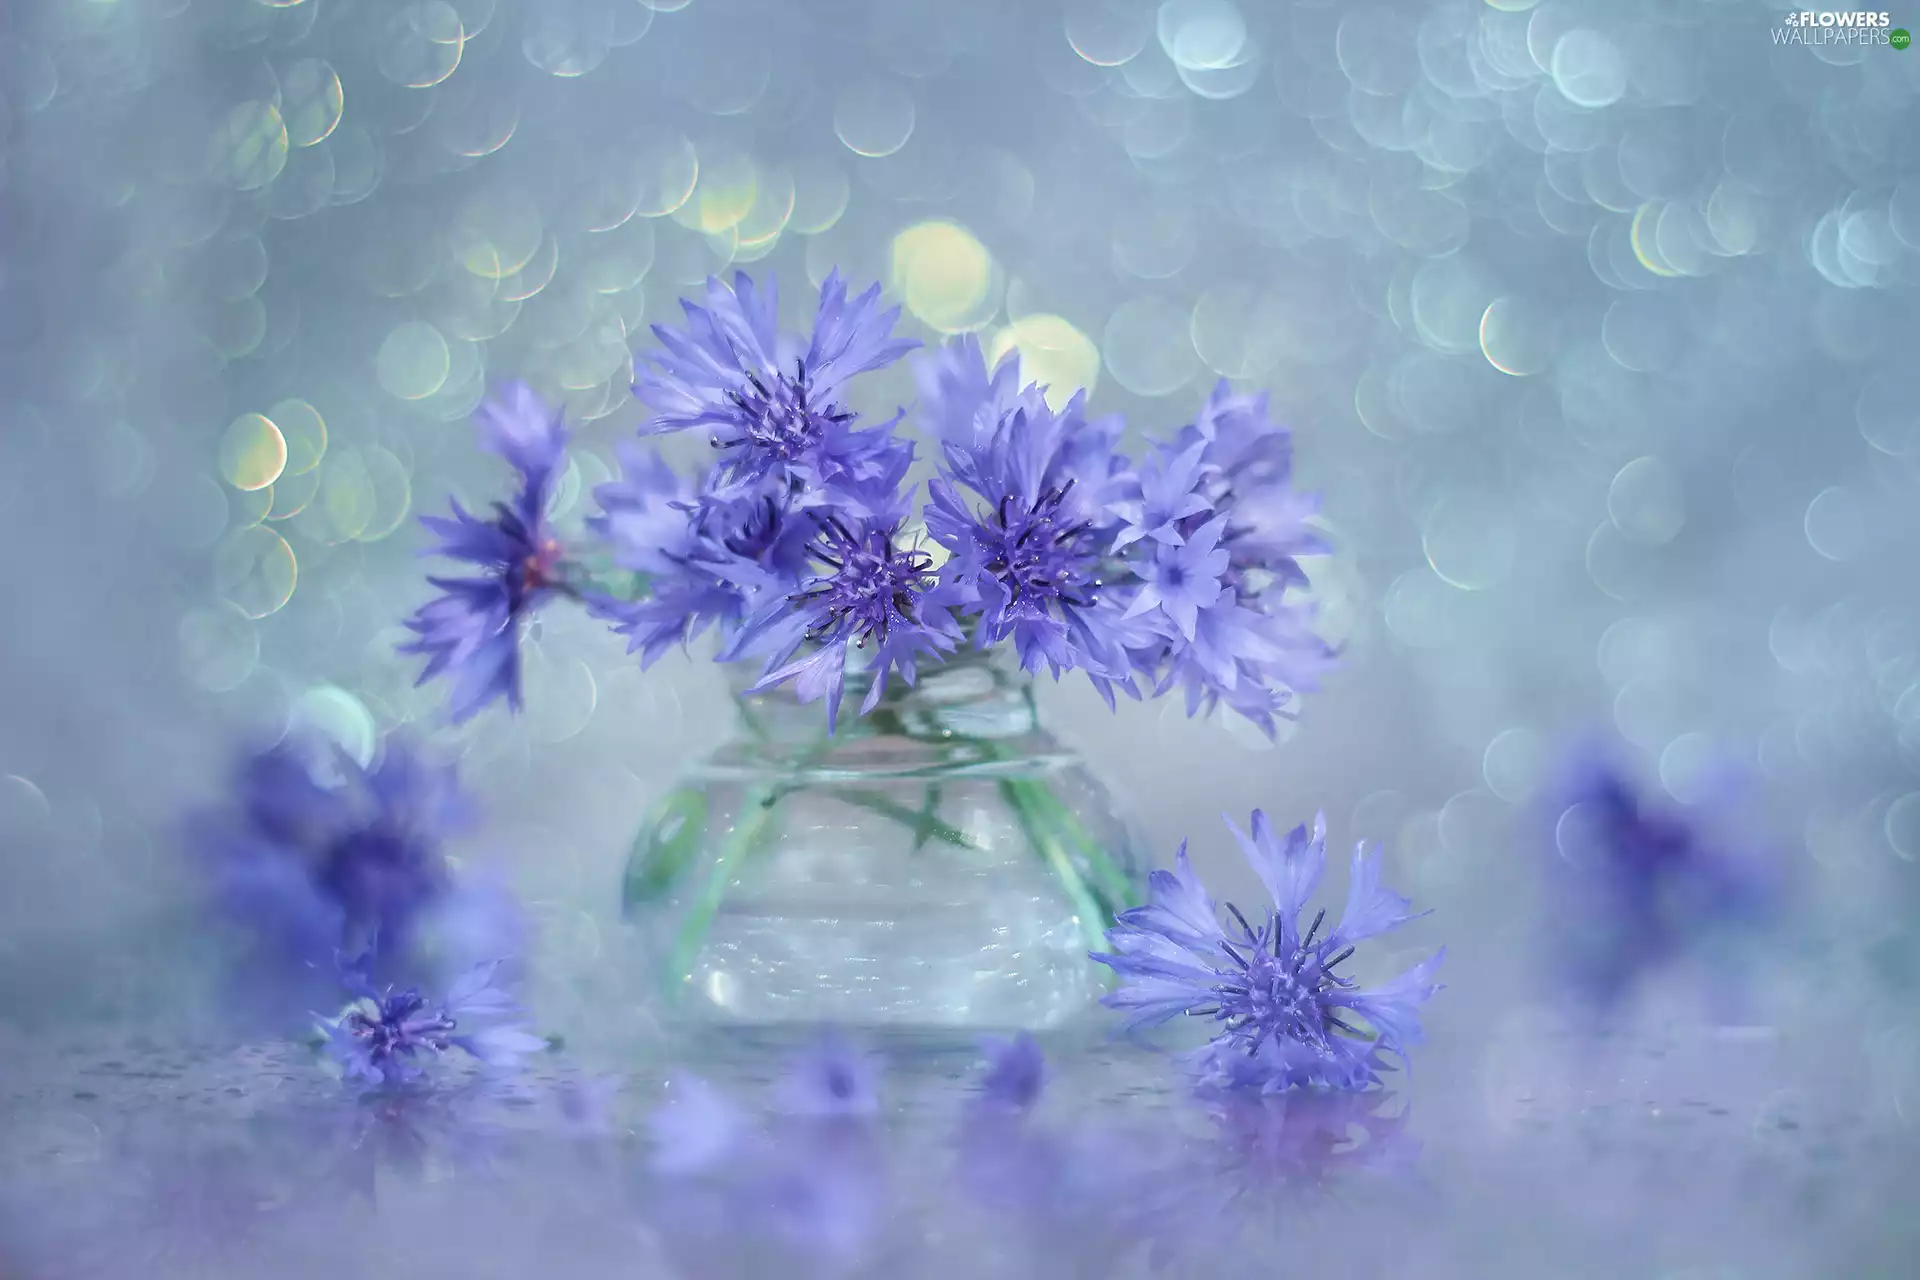 cornflowers, Flowers, vase, Blue